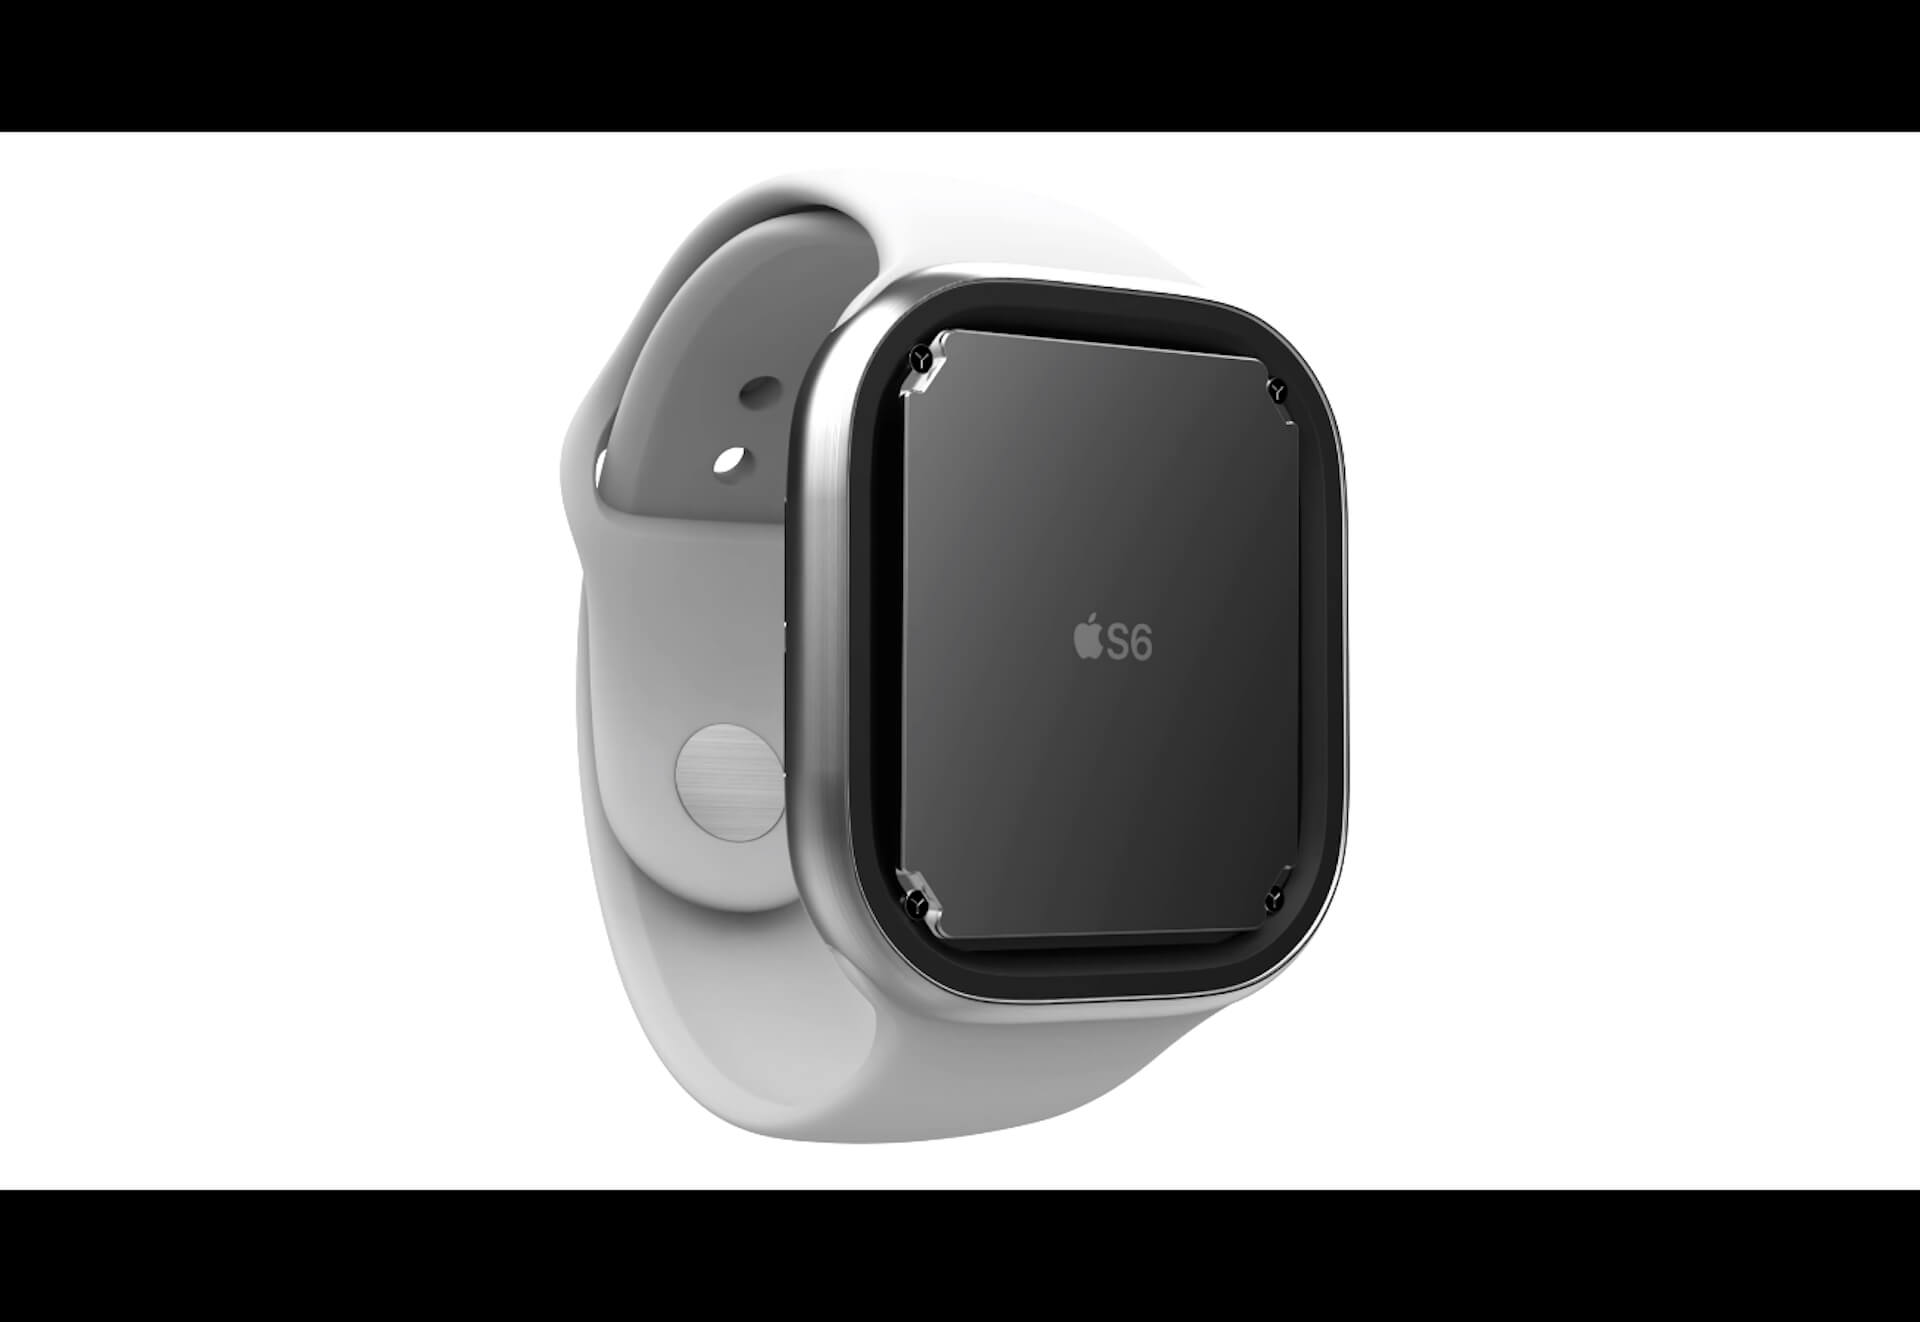 ついにApple Watch Series 6発表日が判明？新型iPadとともに9月8日に発表か tech200902_applewatch_main